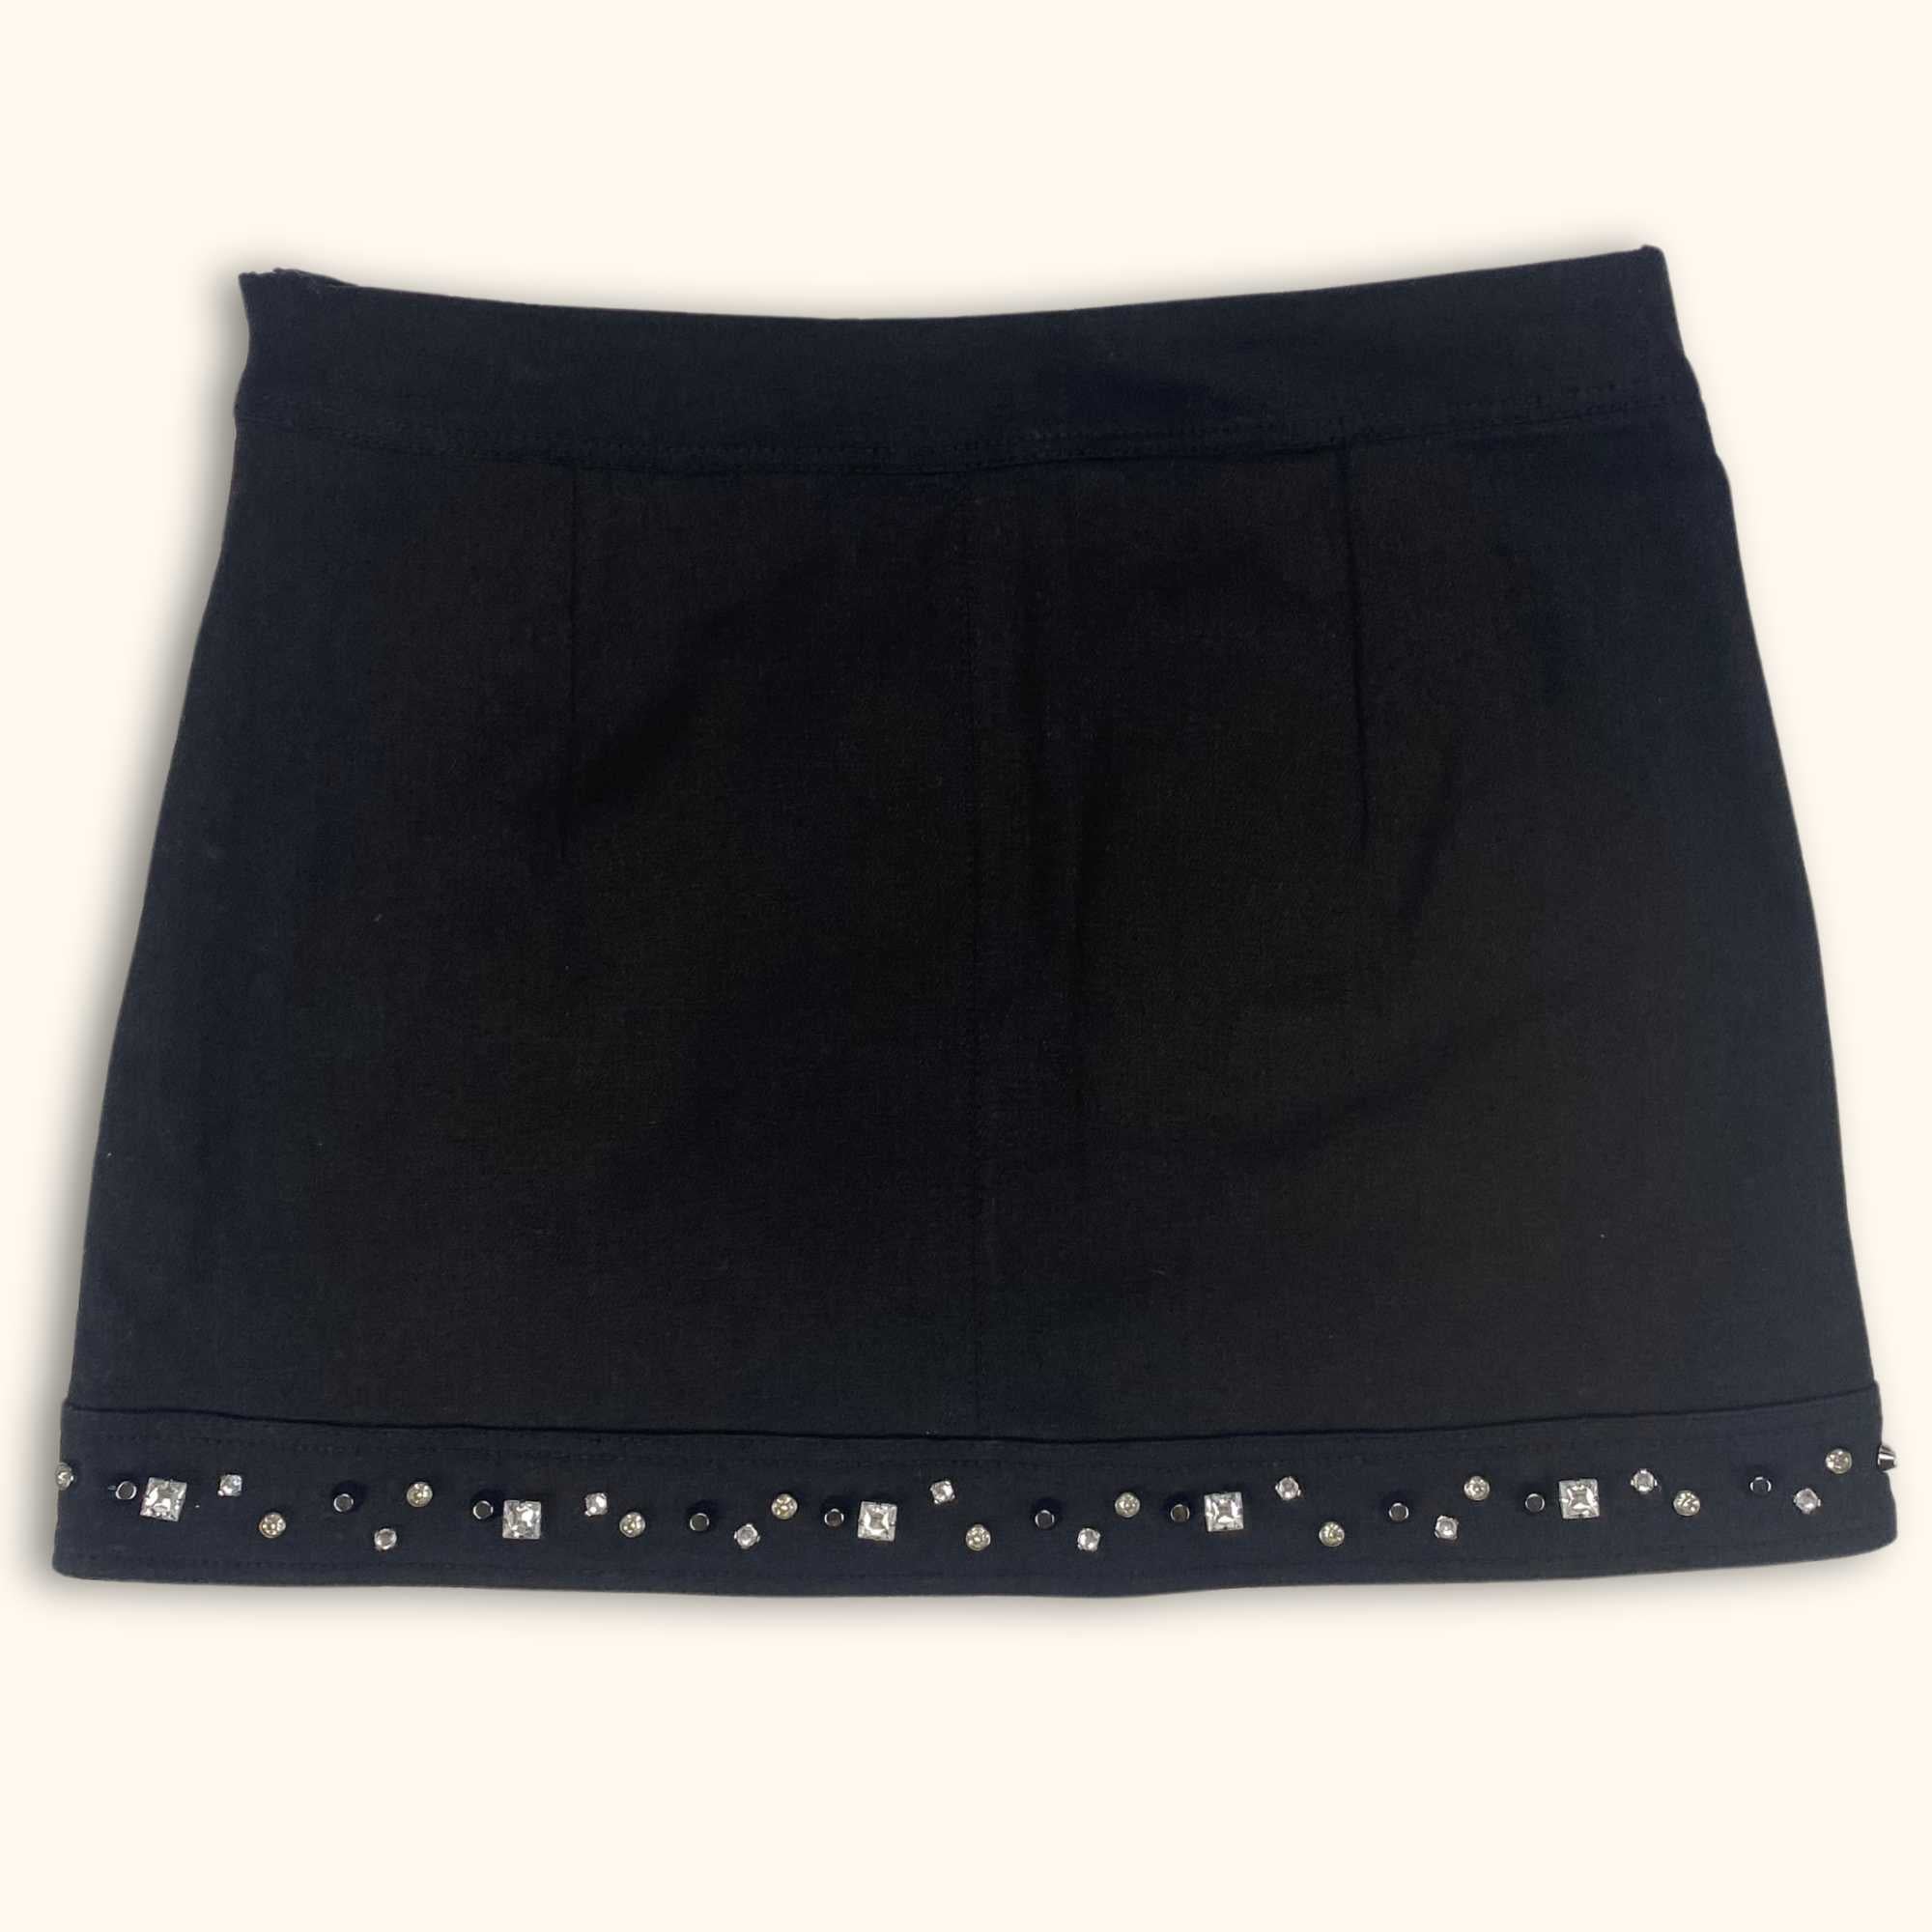 Zara Stud Black Denim Skirt - Size Medium - Zara - Skirts